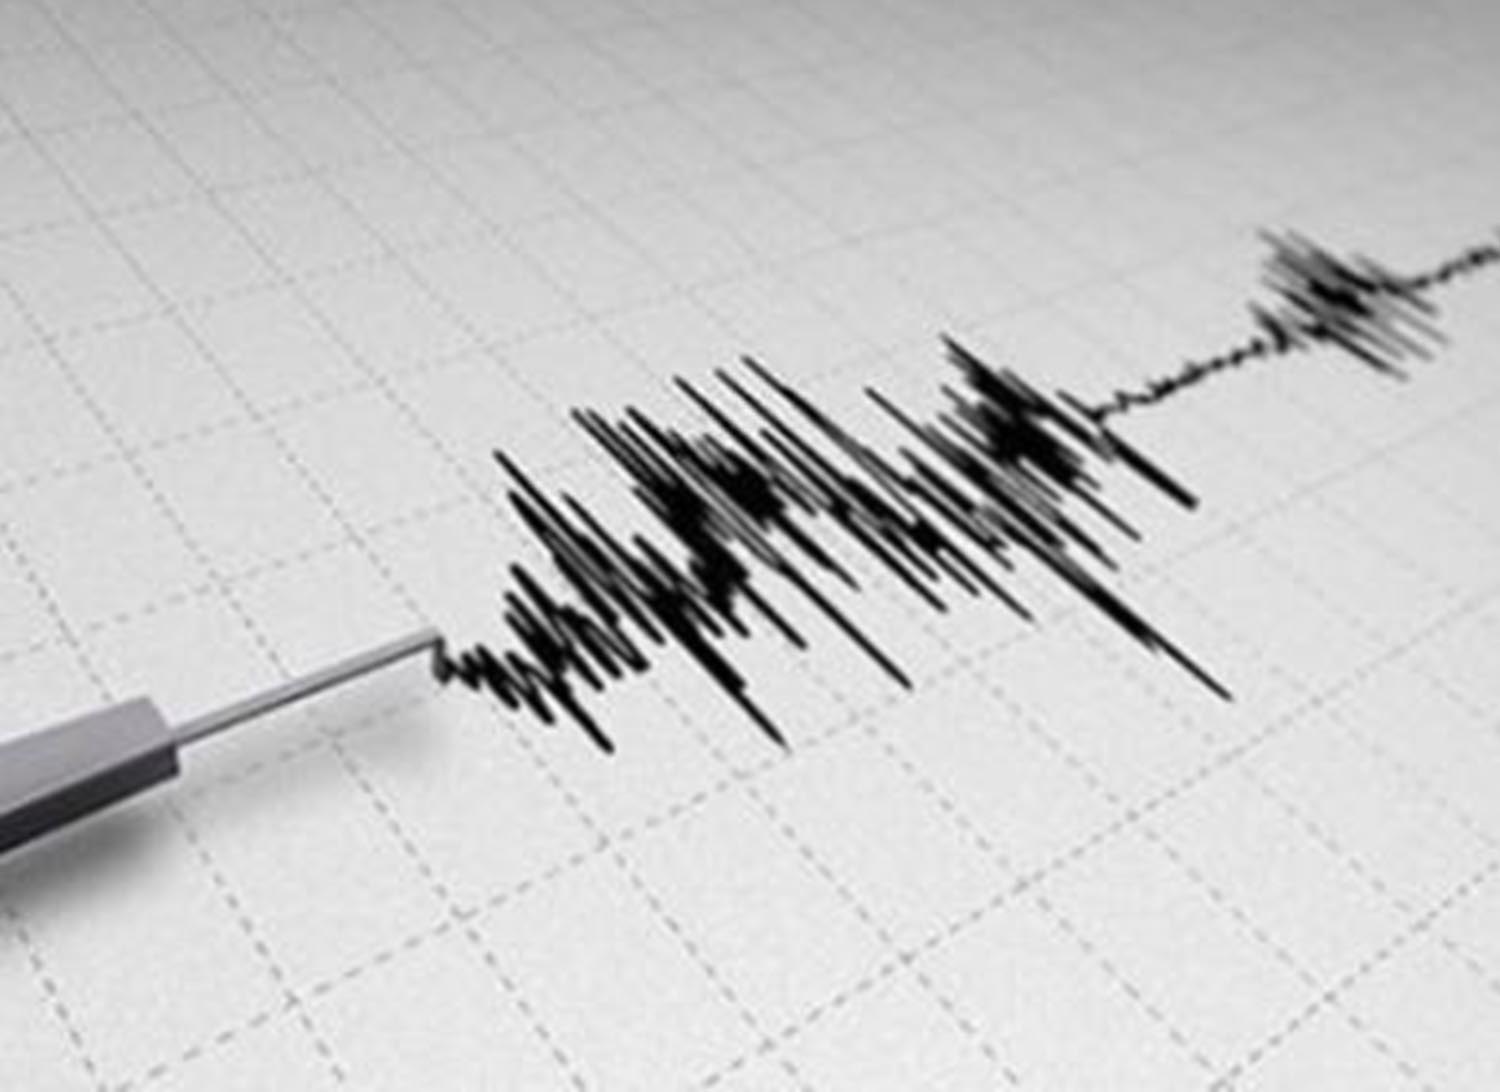 Δεύτερος ισχυρός σεισμός στη Σάμο – 5 Ρίχτερ ταρακούνησαν το Αιγαίο